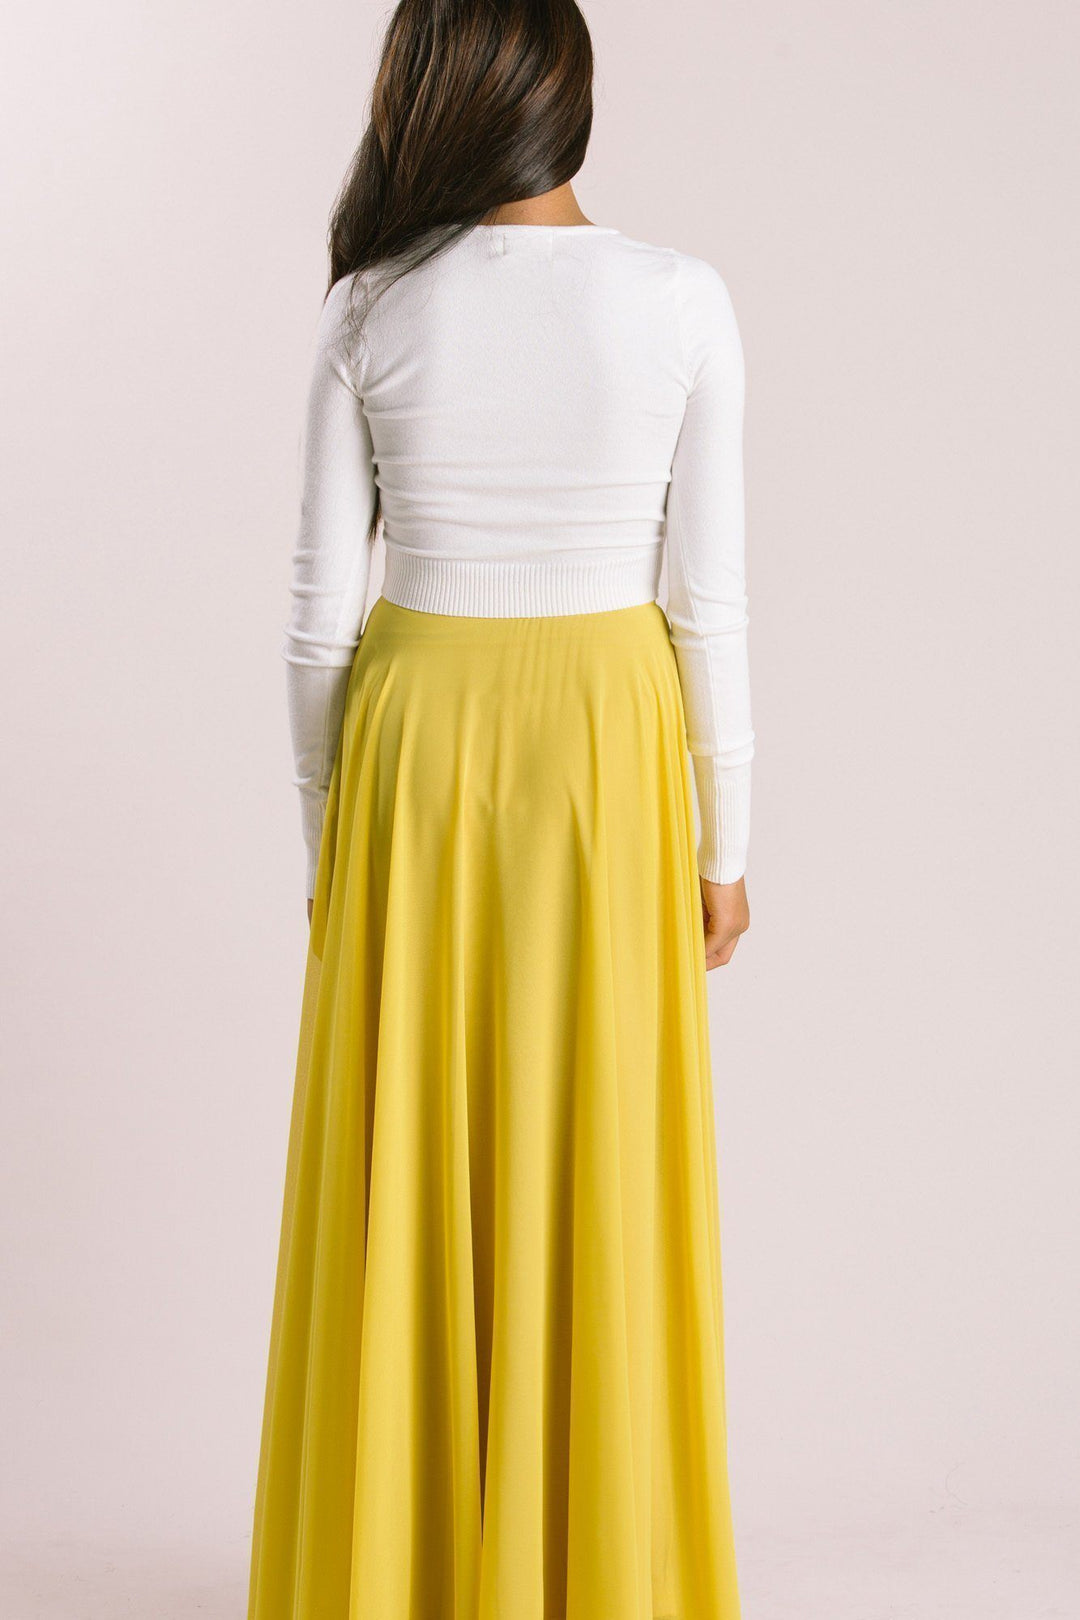 CHICWISH✨ Timeless Favorite Chiffon Yellow Maxi Skirt SZ. M